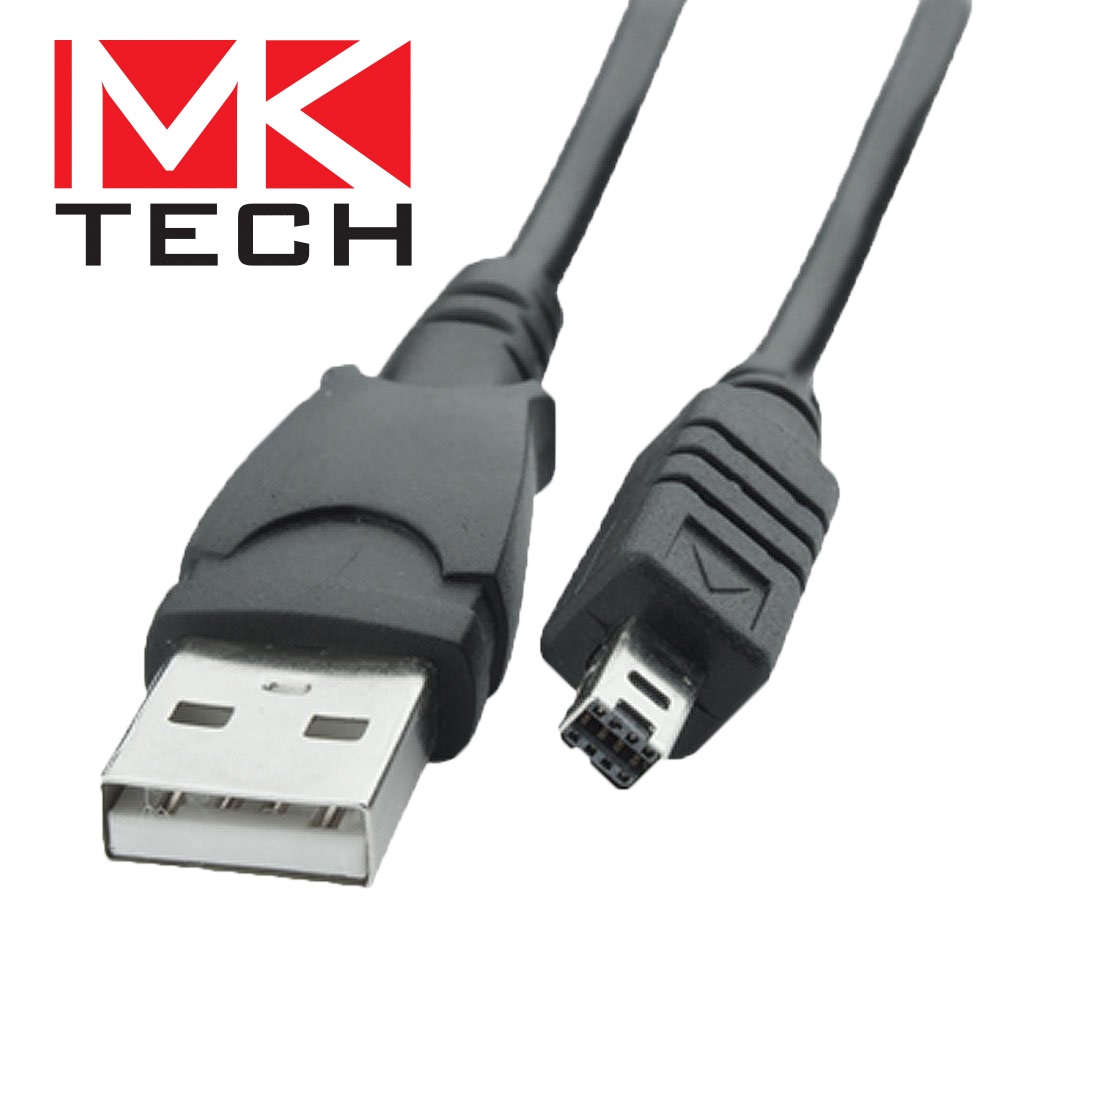 USB2.0 A Male > Mini-b Minolta 1.8m MKTECH